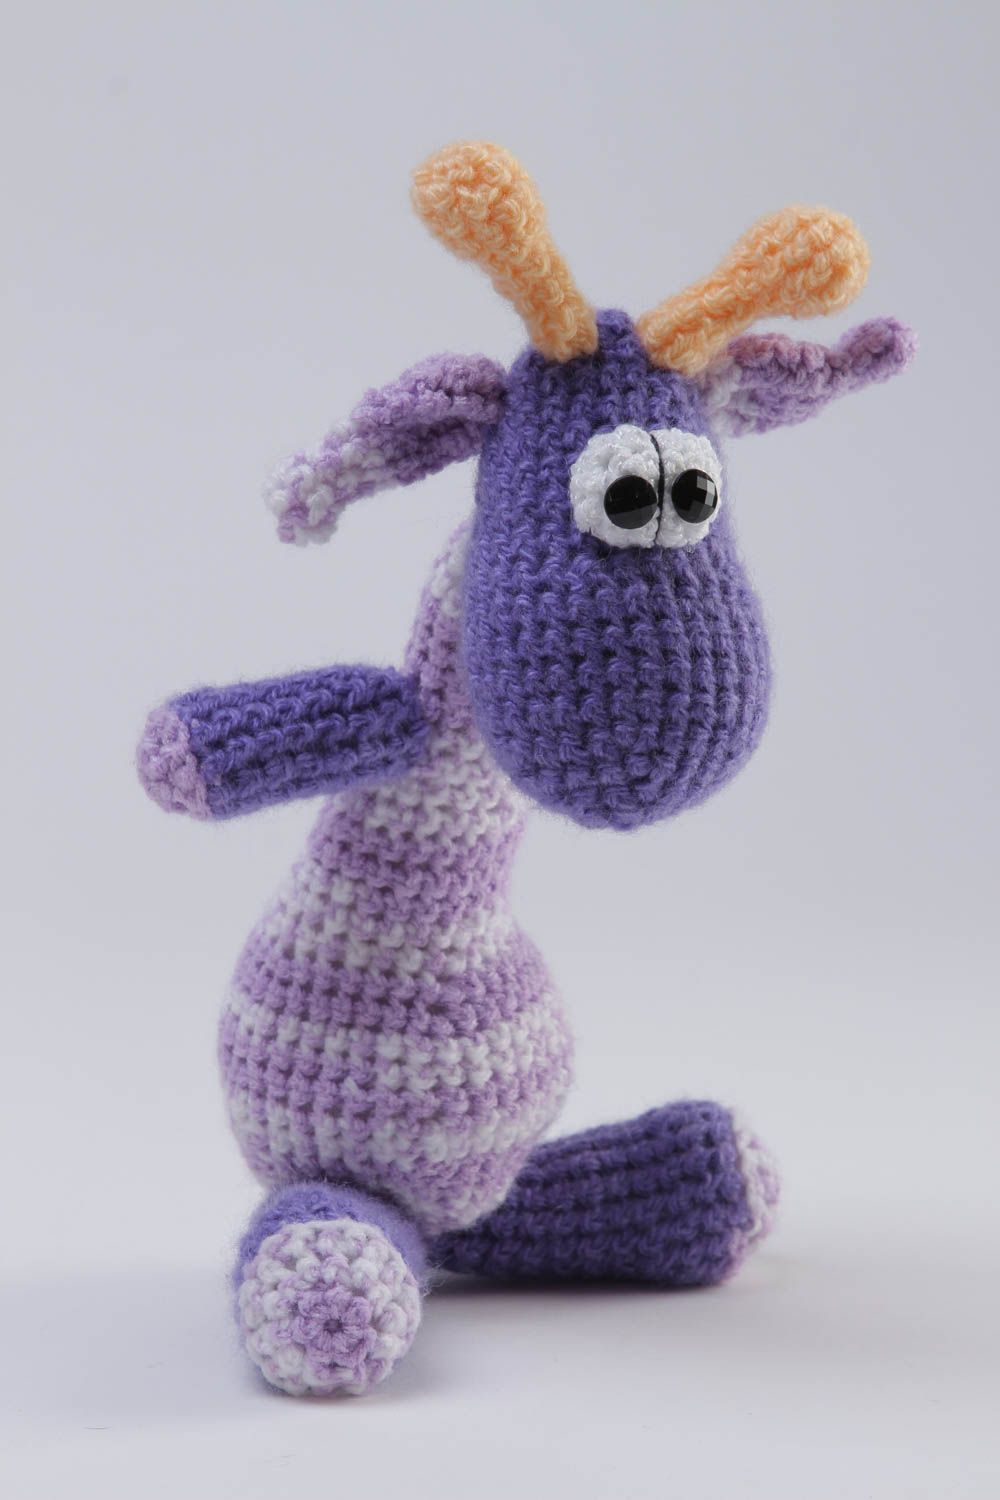 Funny handmade soft toy crochet toy childrens toys birthday gift ideas photo 2